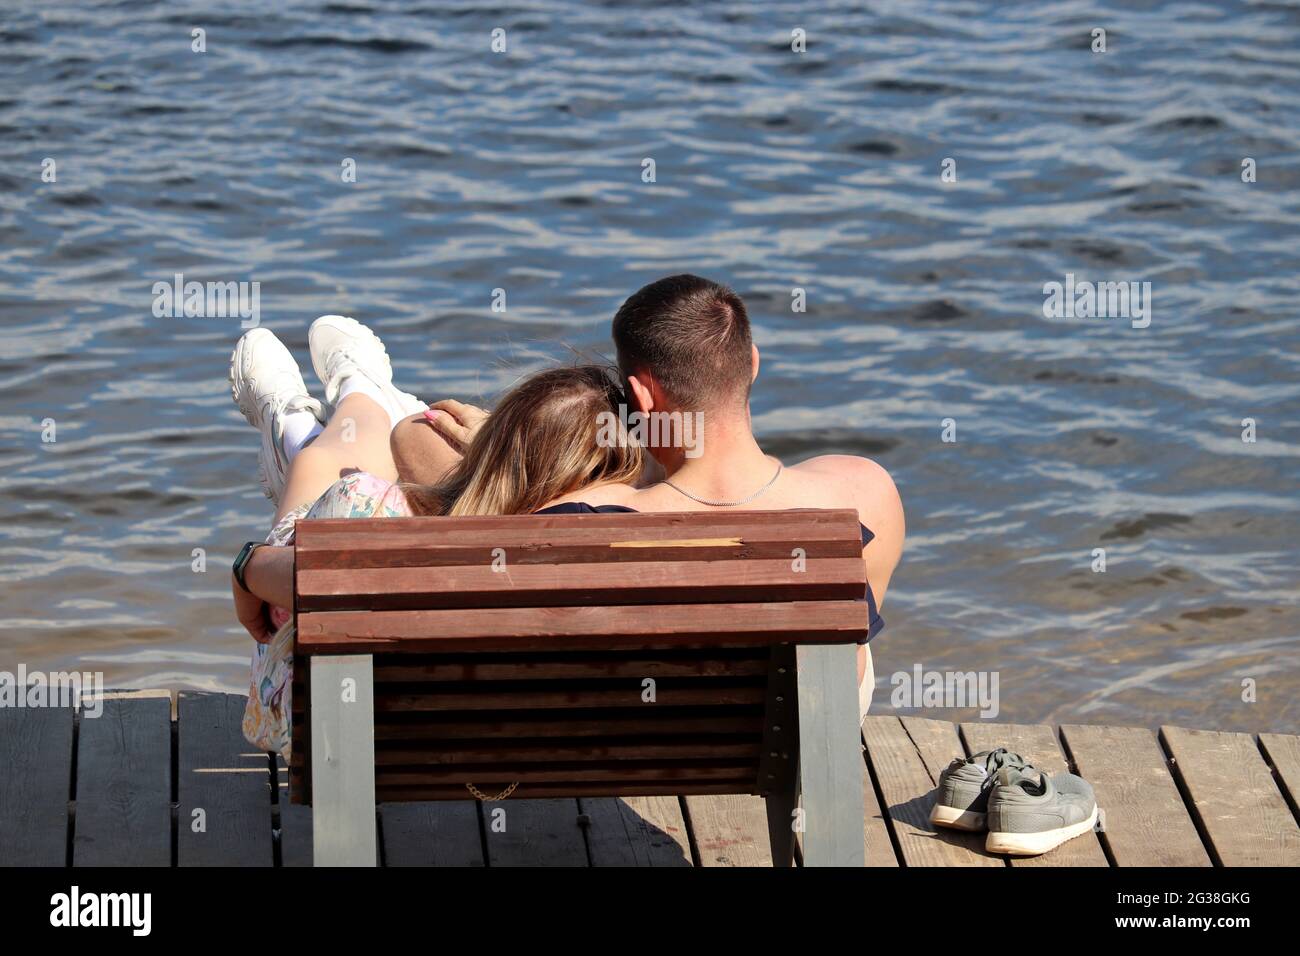 Ein junges Paar umarmt sich in einem hölzernen Liegestuhl am Strand. Romantischer Urlaub, Sommerurlaub an einer Meer- oder Flussküste Stockfoto